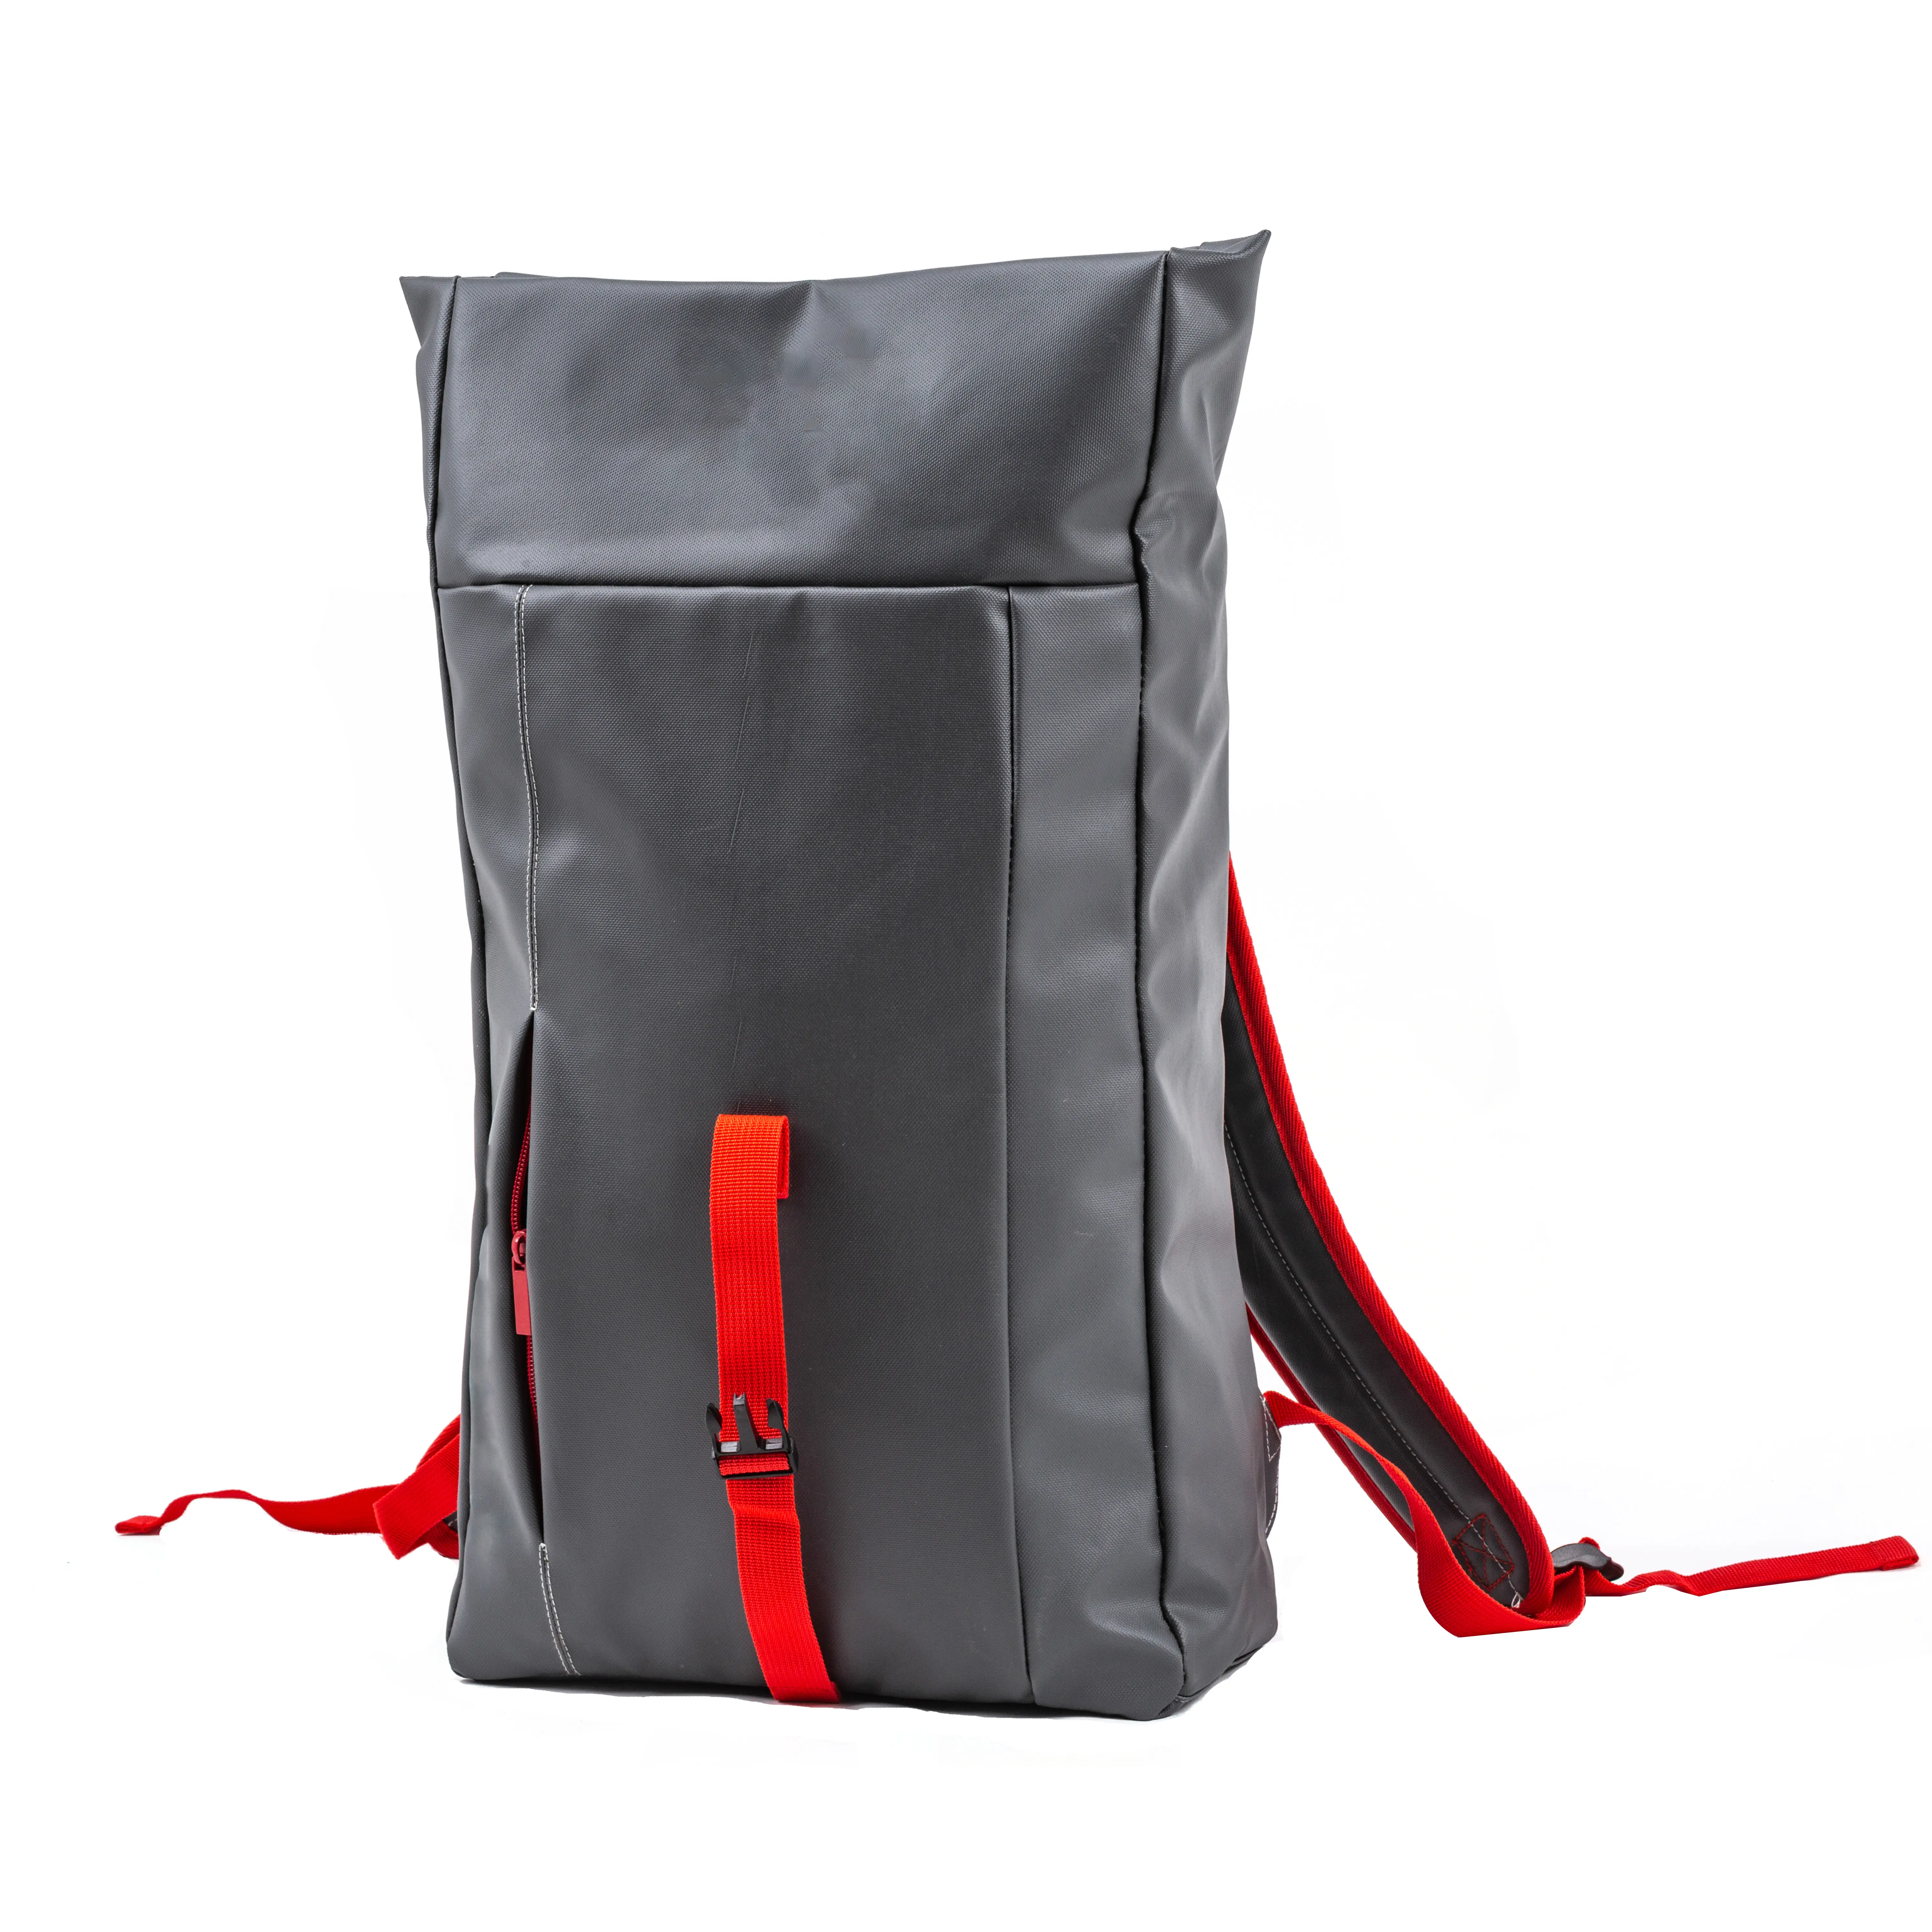 Novo estilo personalizado oxford tecido esporte ao ar livre montanha escalada saco preço mais baixo viajando correndo mochila